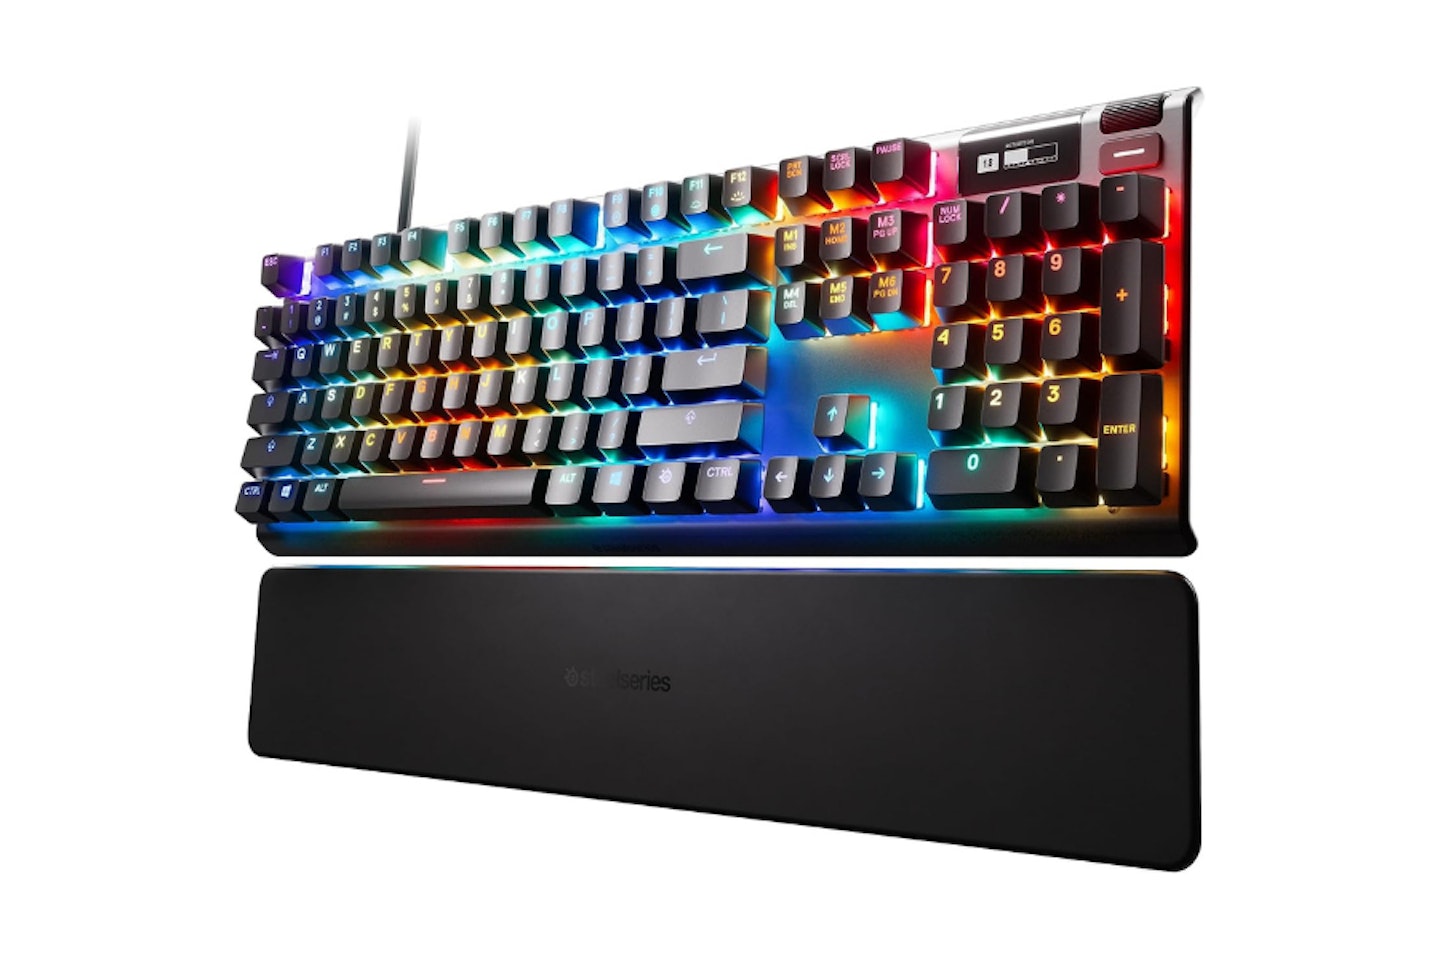 SteelSeries Apex Pro - Mechanical Gaming Keyboard